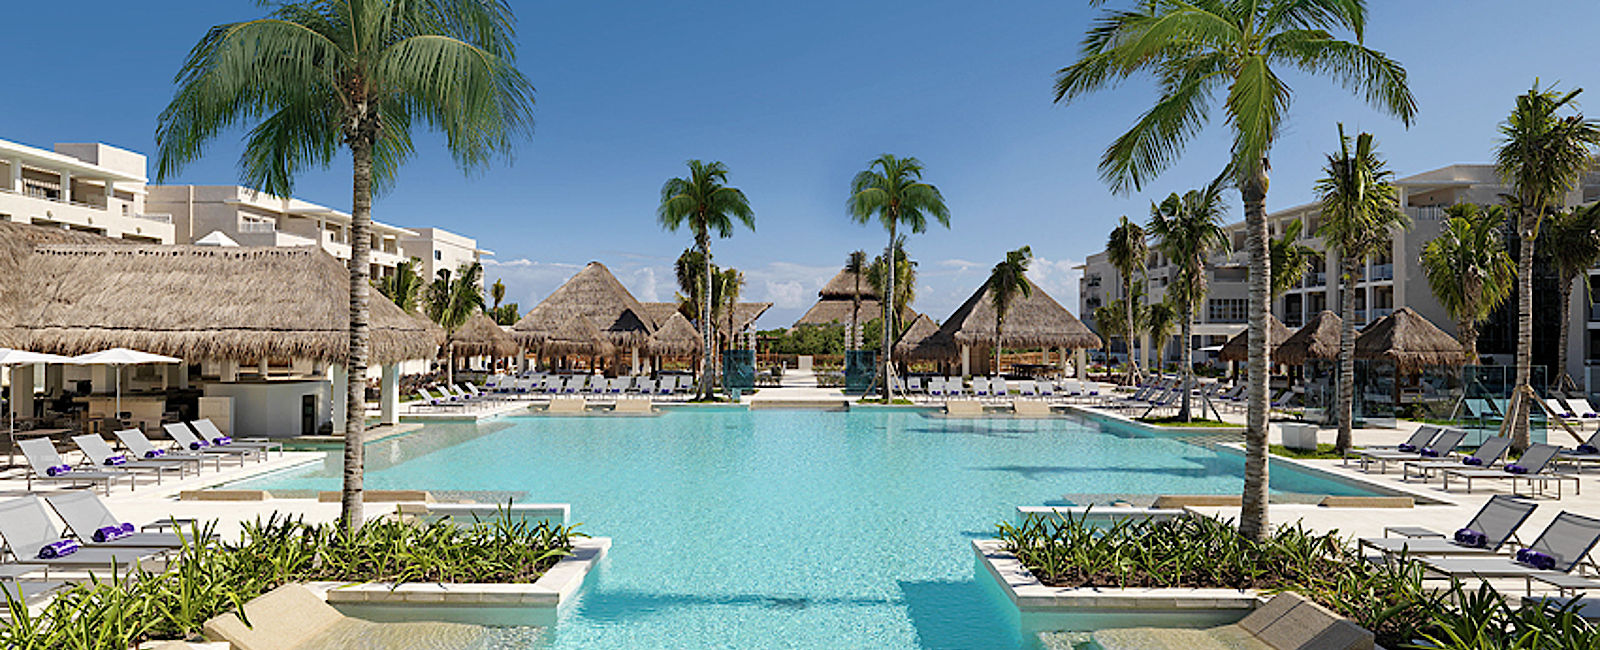 HOTELTEST
 Paradisus Playa del Carmen La Perla 
 Allround-Resort für alle Ansprüche
 